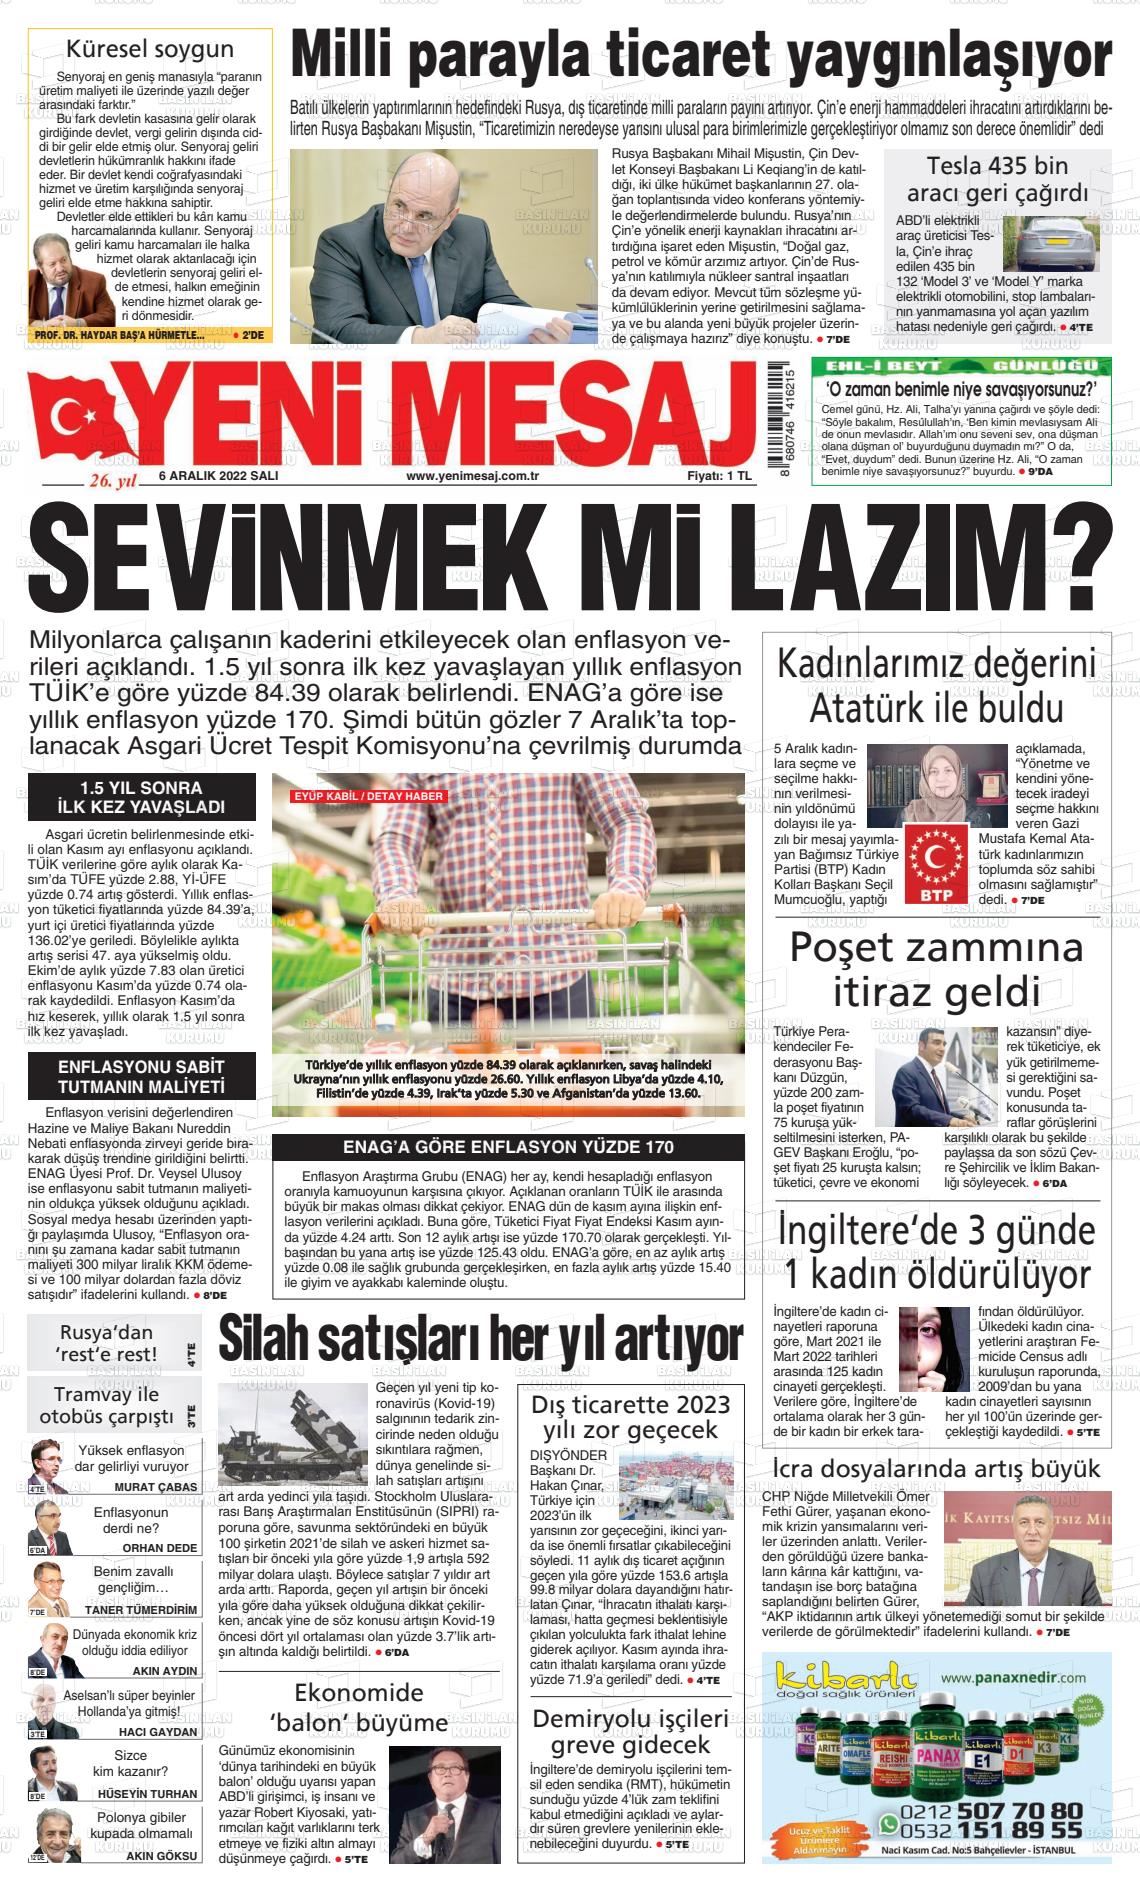 06 Aralık 2022 Yeni Mesaj Gazete Manşeti